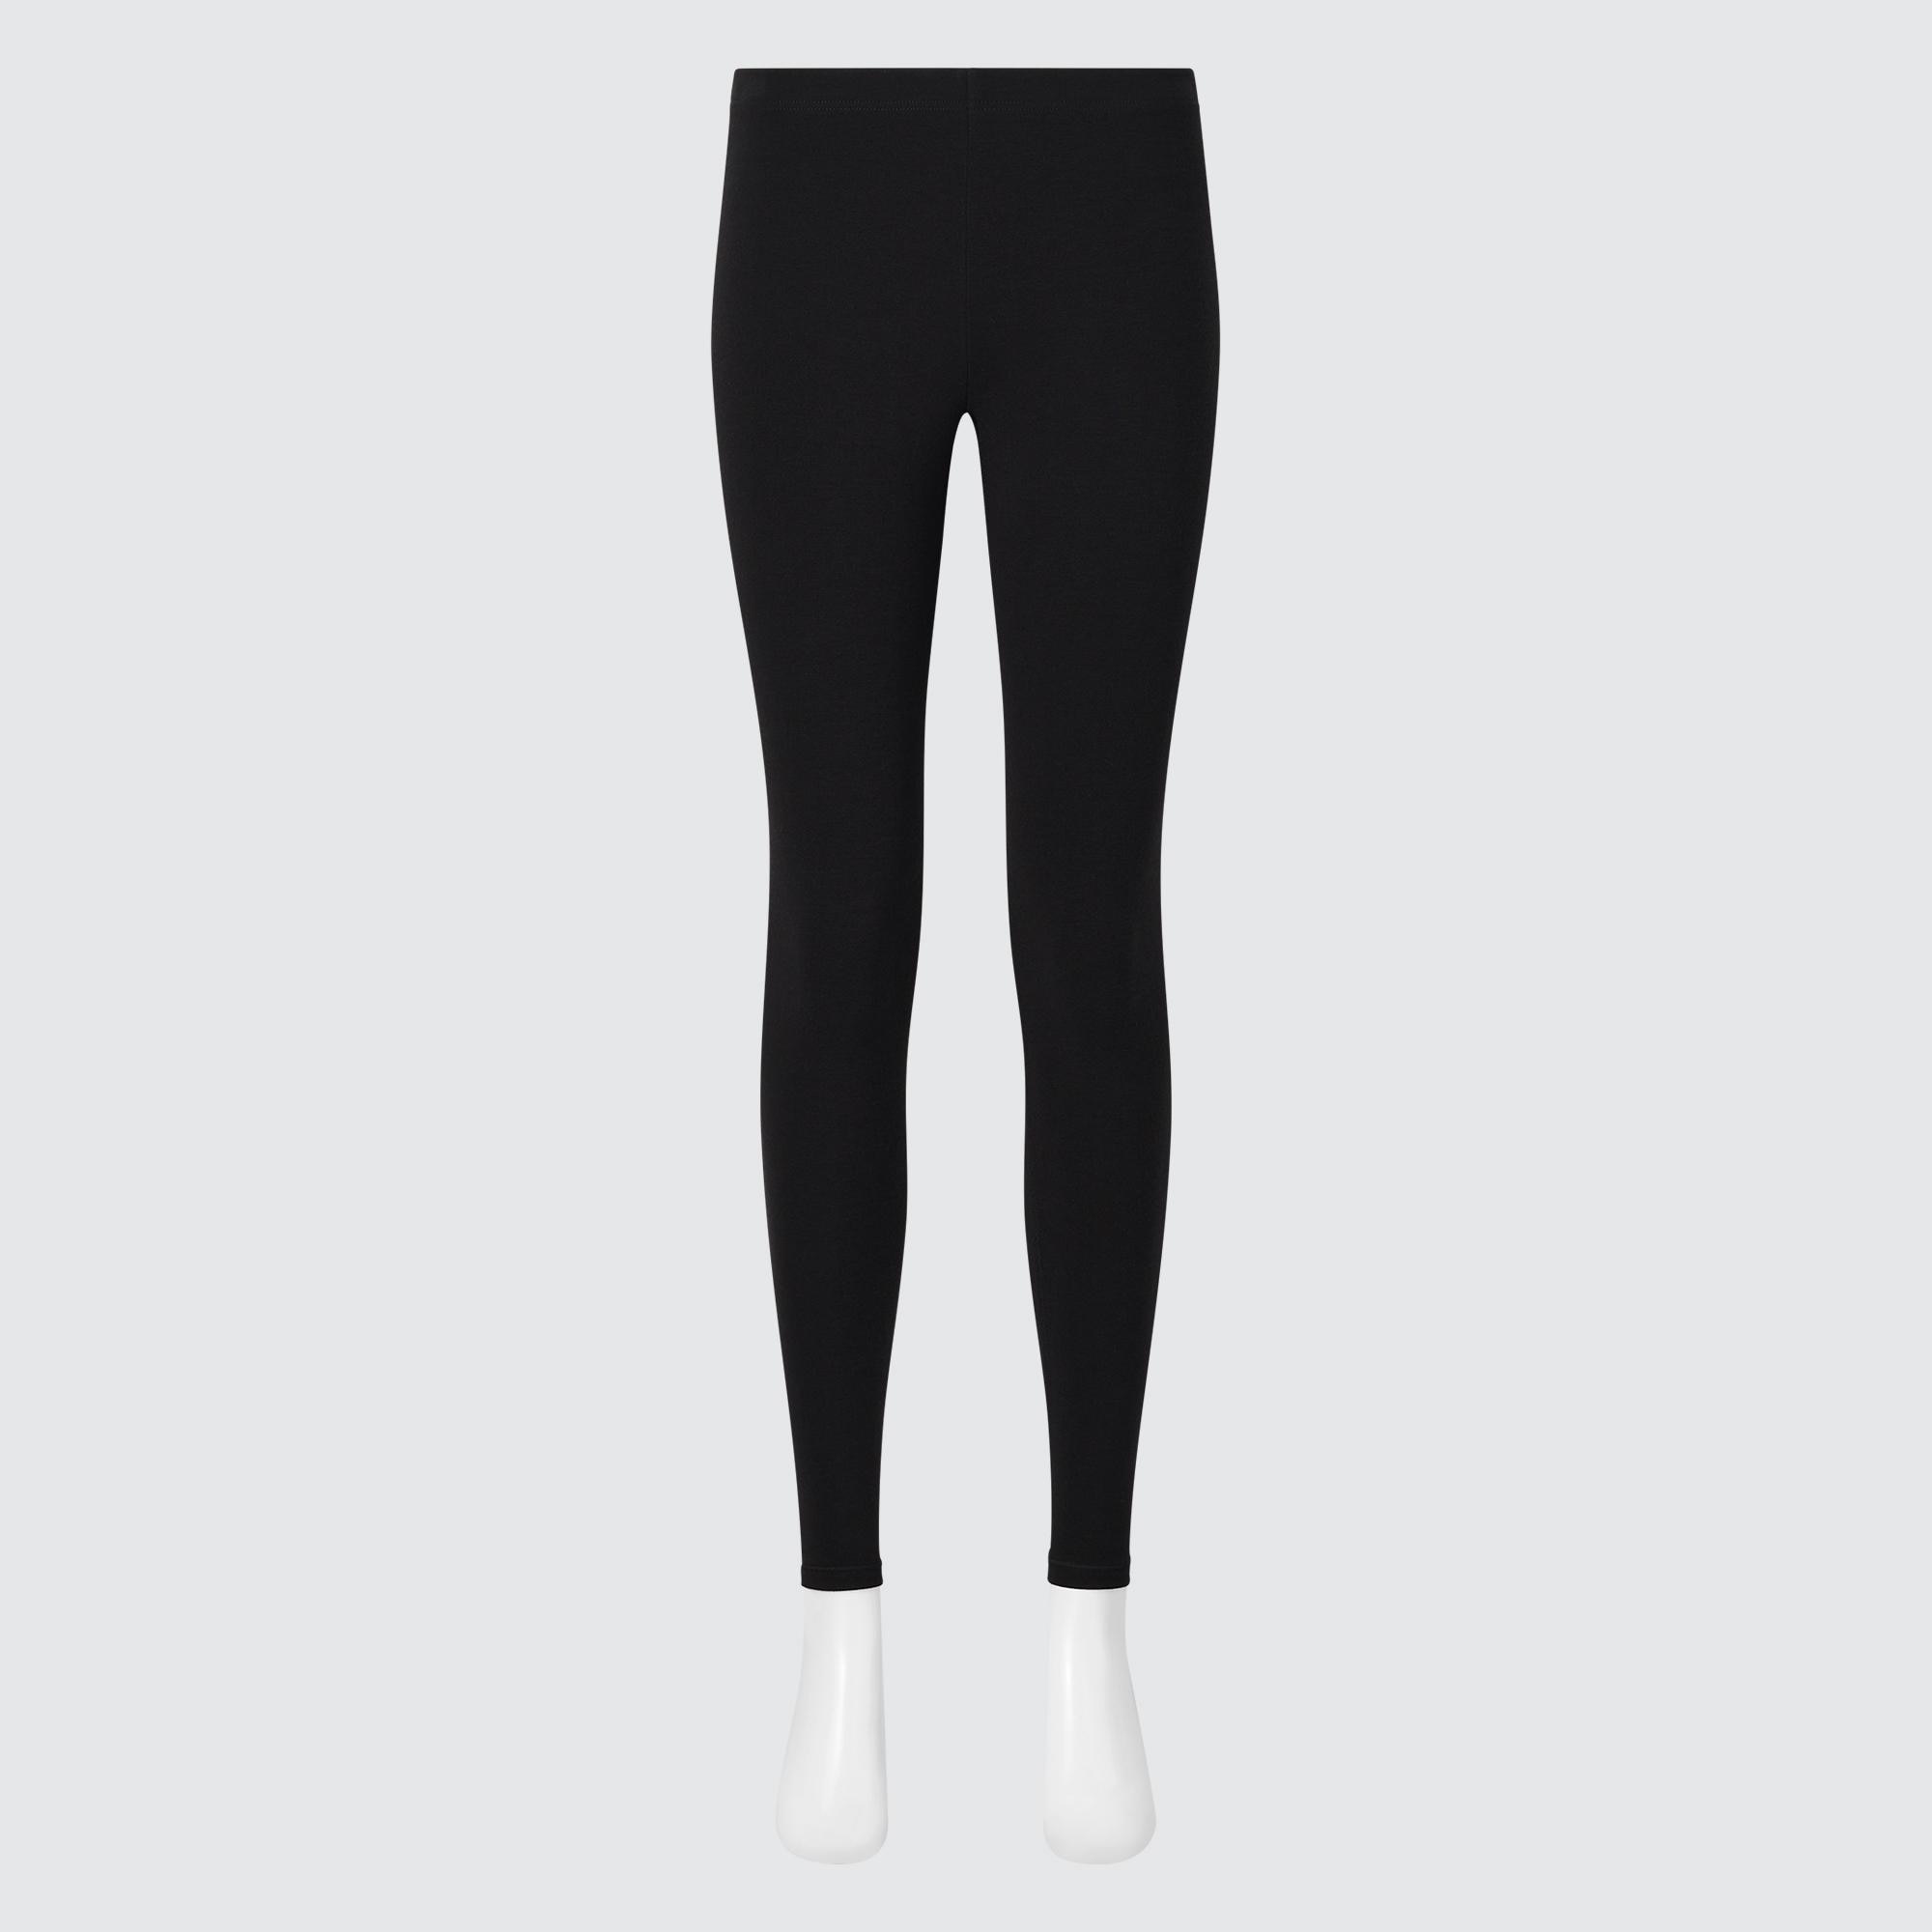 Uniqlo Heattech Ultra Warm Leggings for Women (XL)#384, Women's